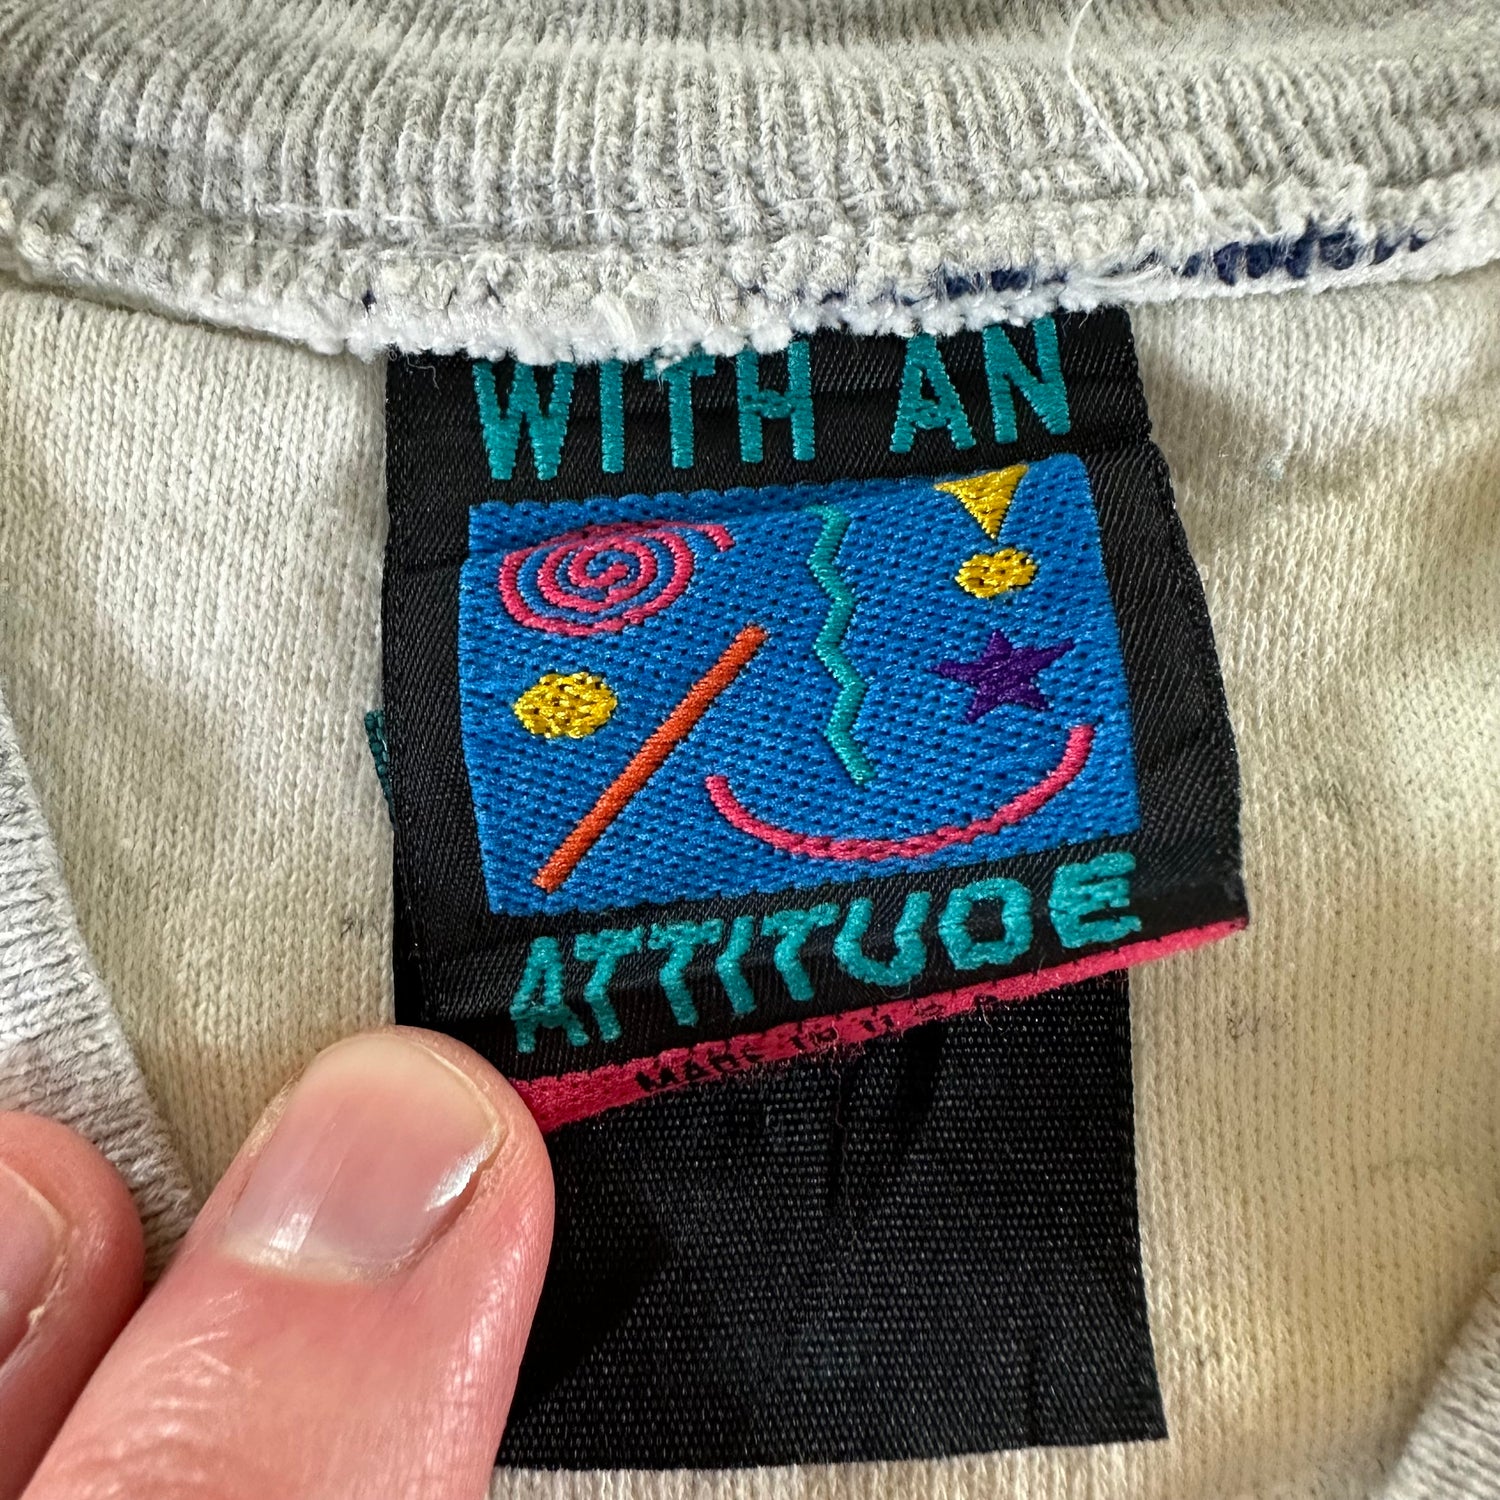 Vintage 1990s Lake Tahoe Sweatshirt size Large